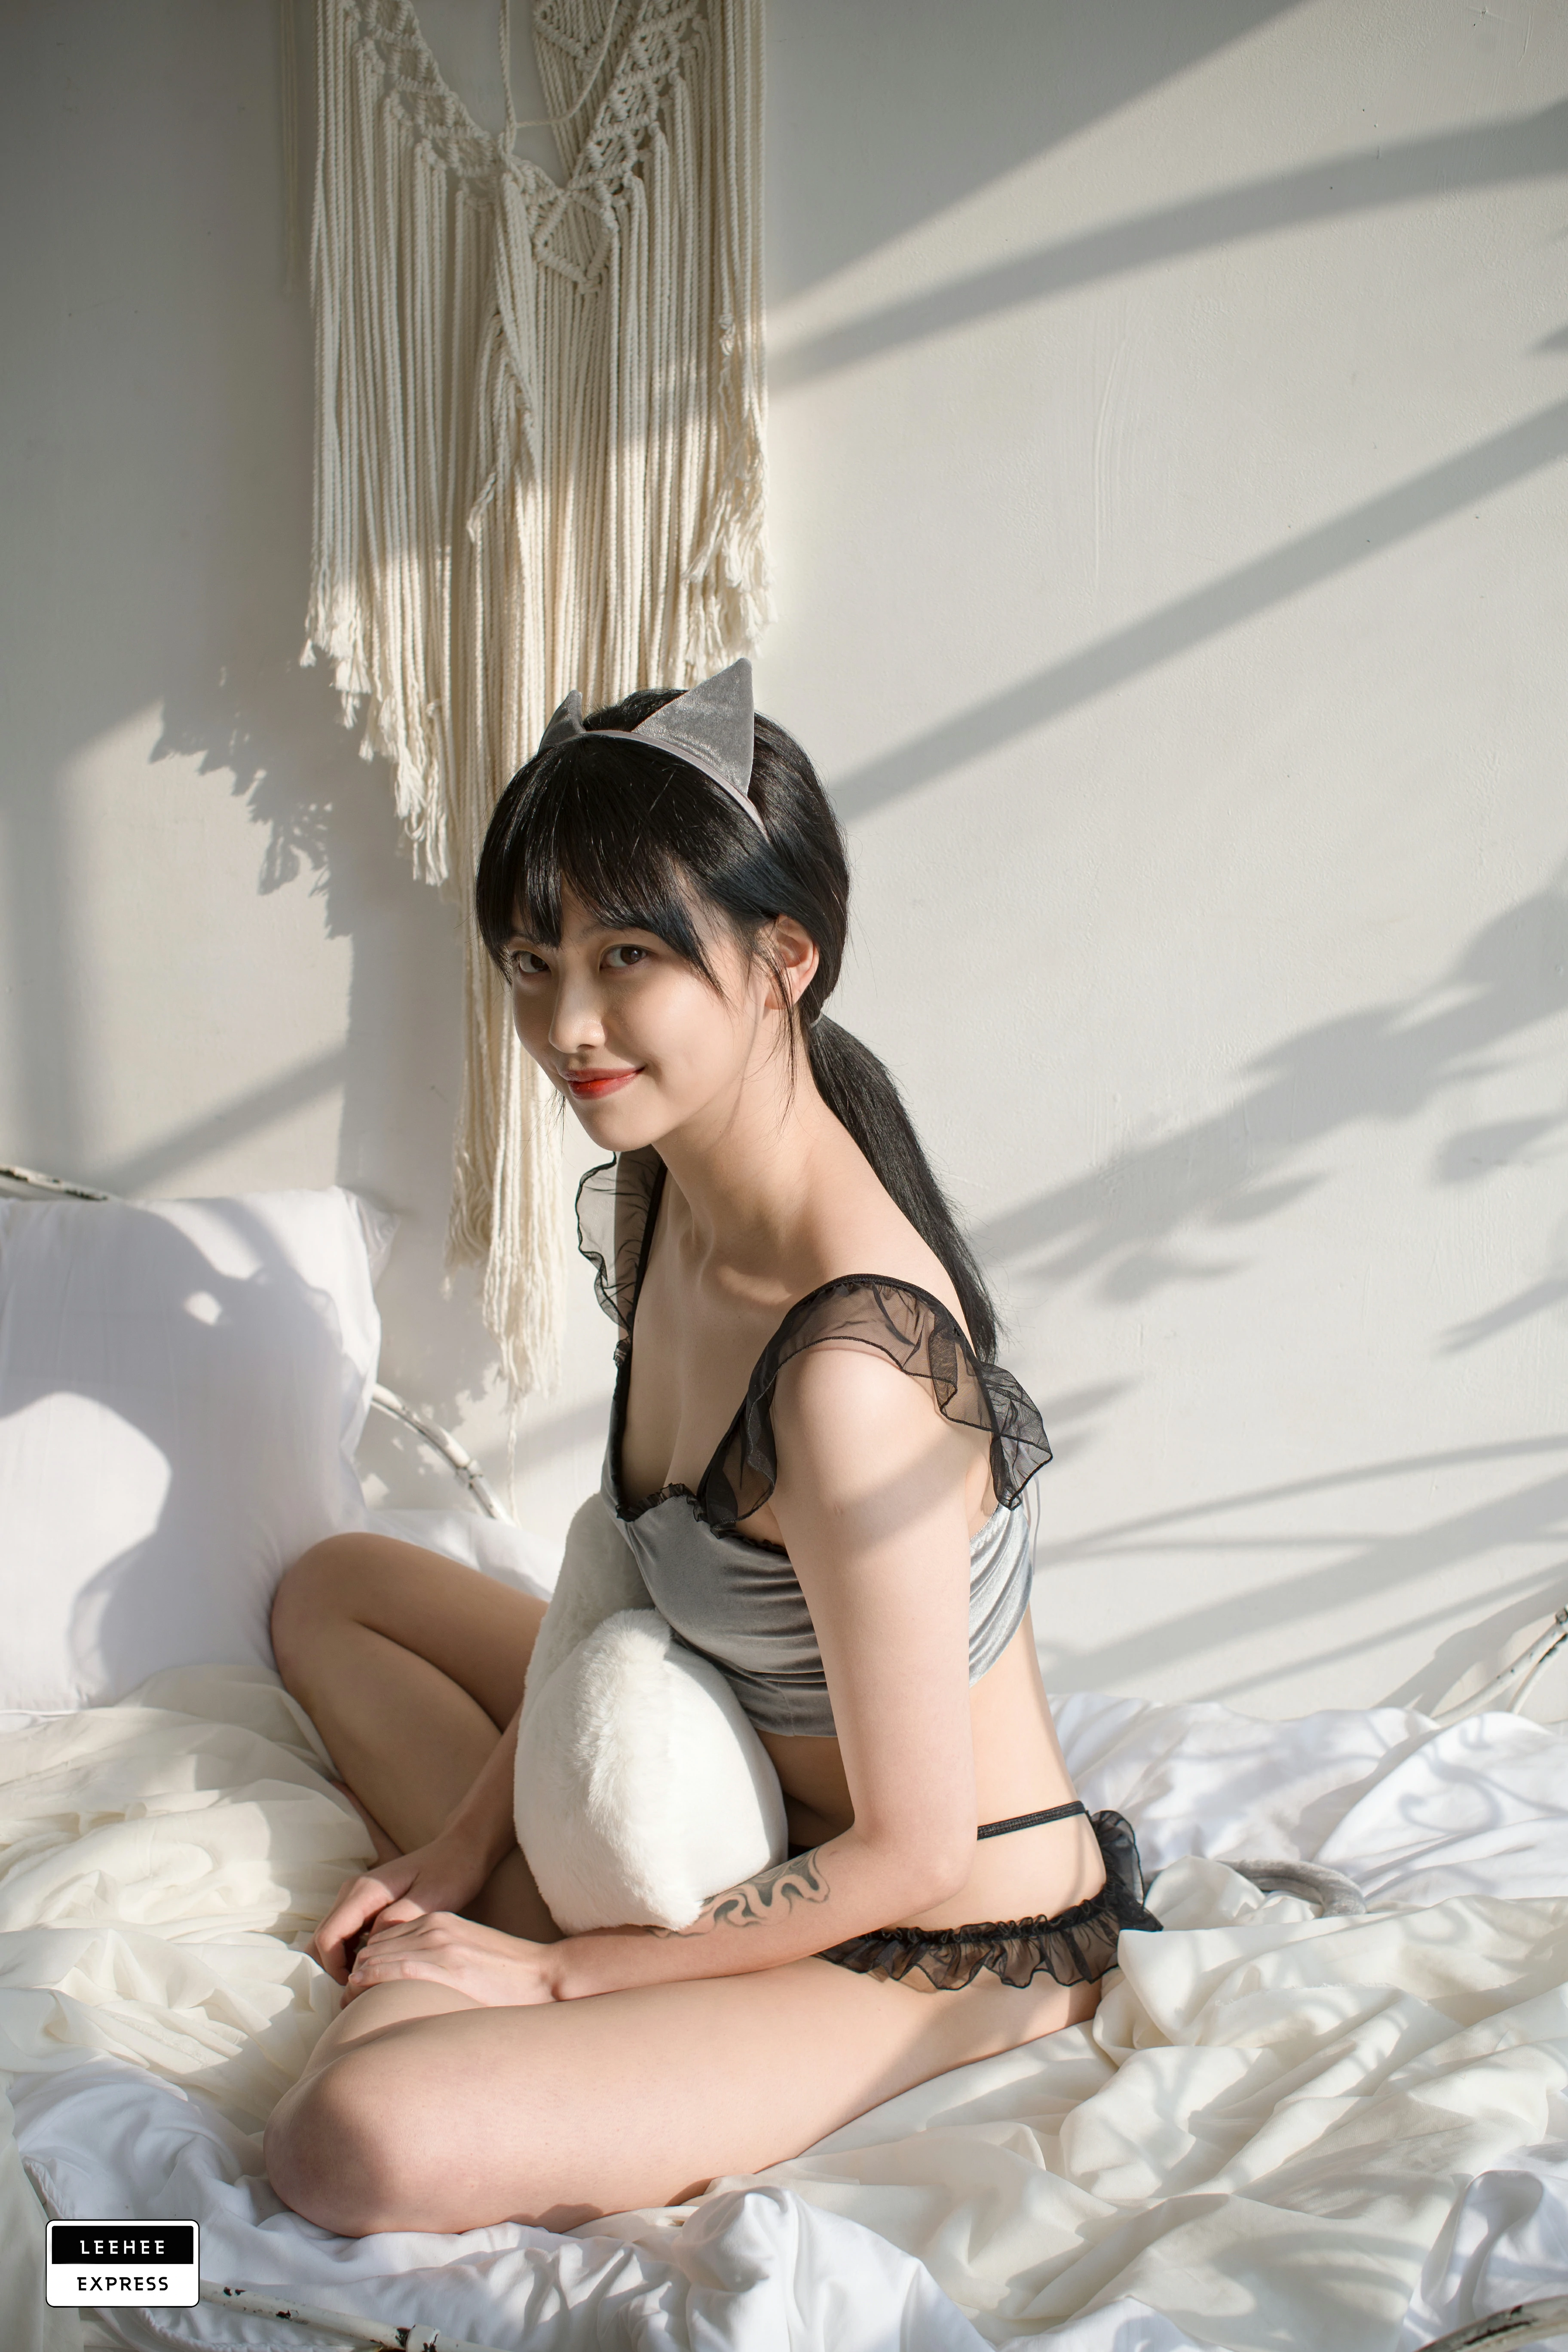 [Leehee Express]LEBE-007 GMS 韩国性感少女黑色透视上衣居家私房写真集,0031